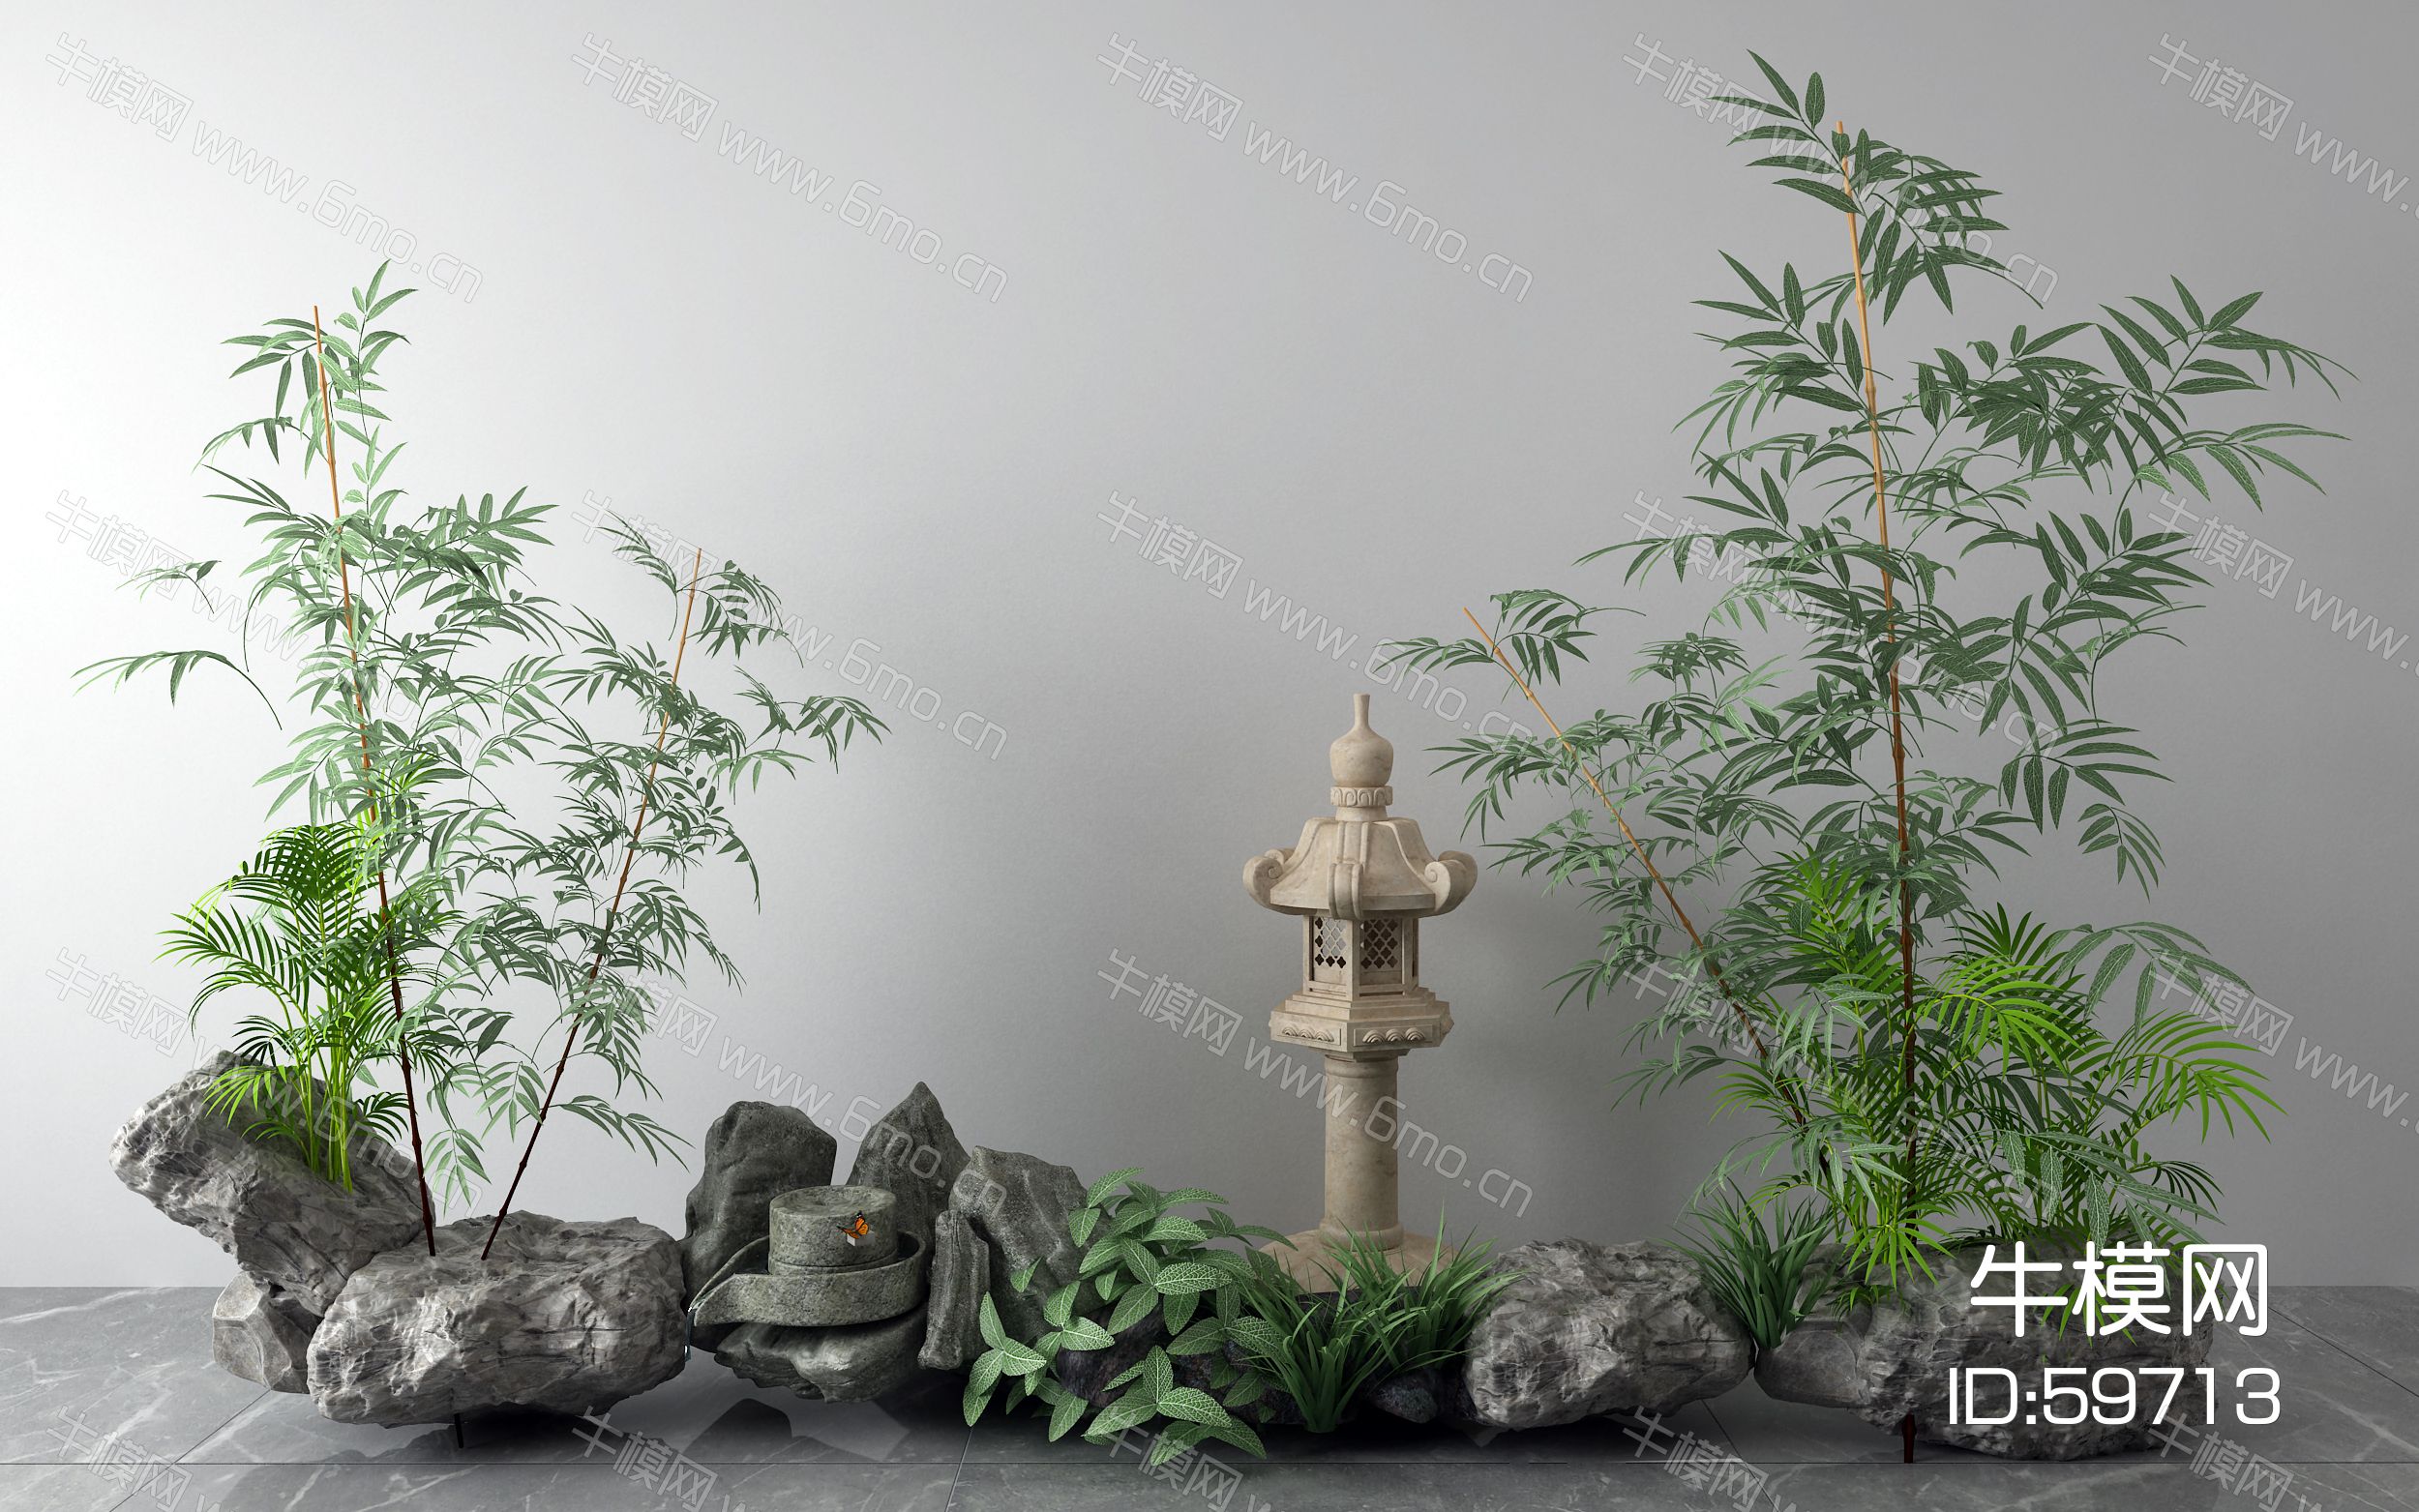 新中式景观小品 石头 竹子 石灯